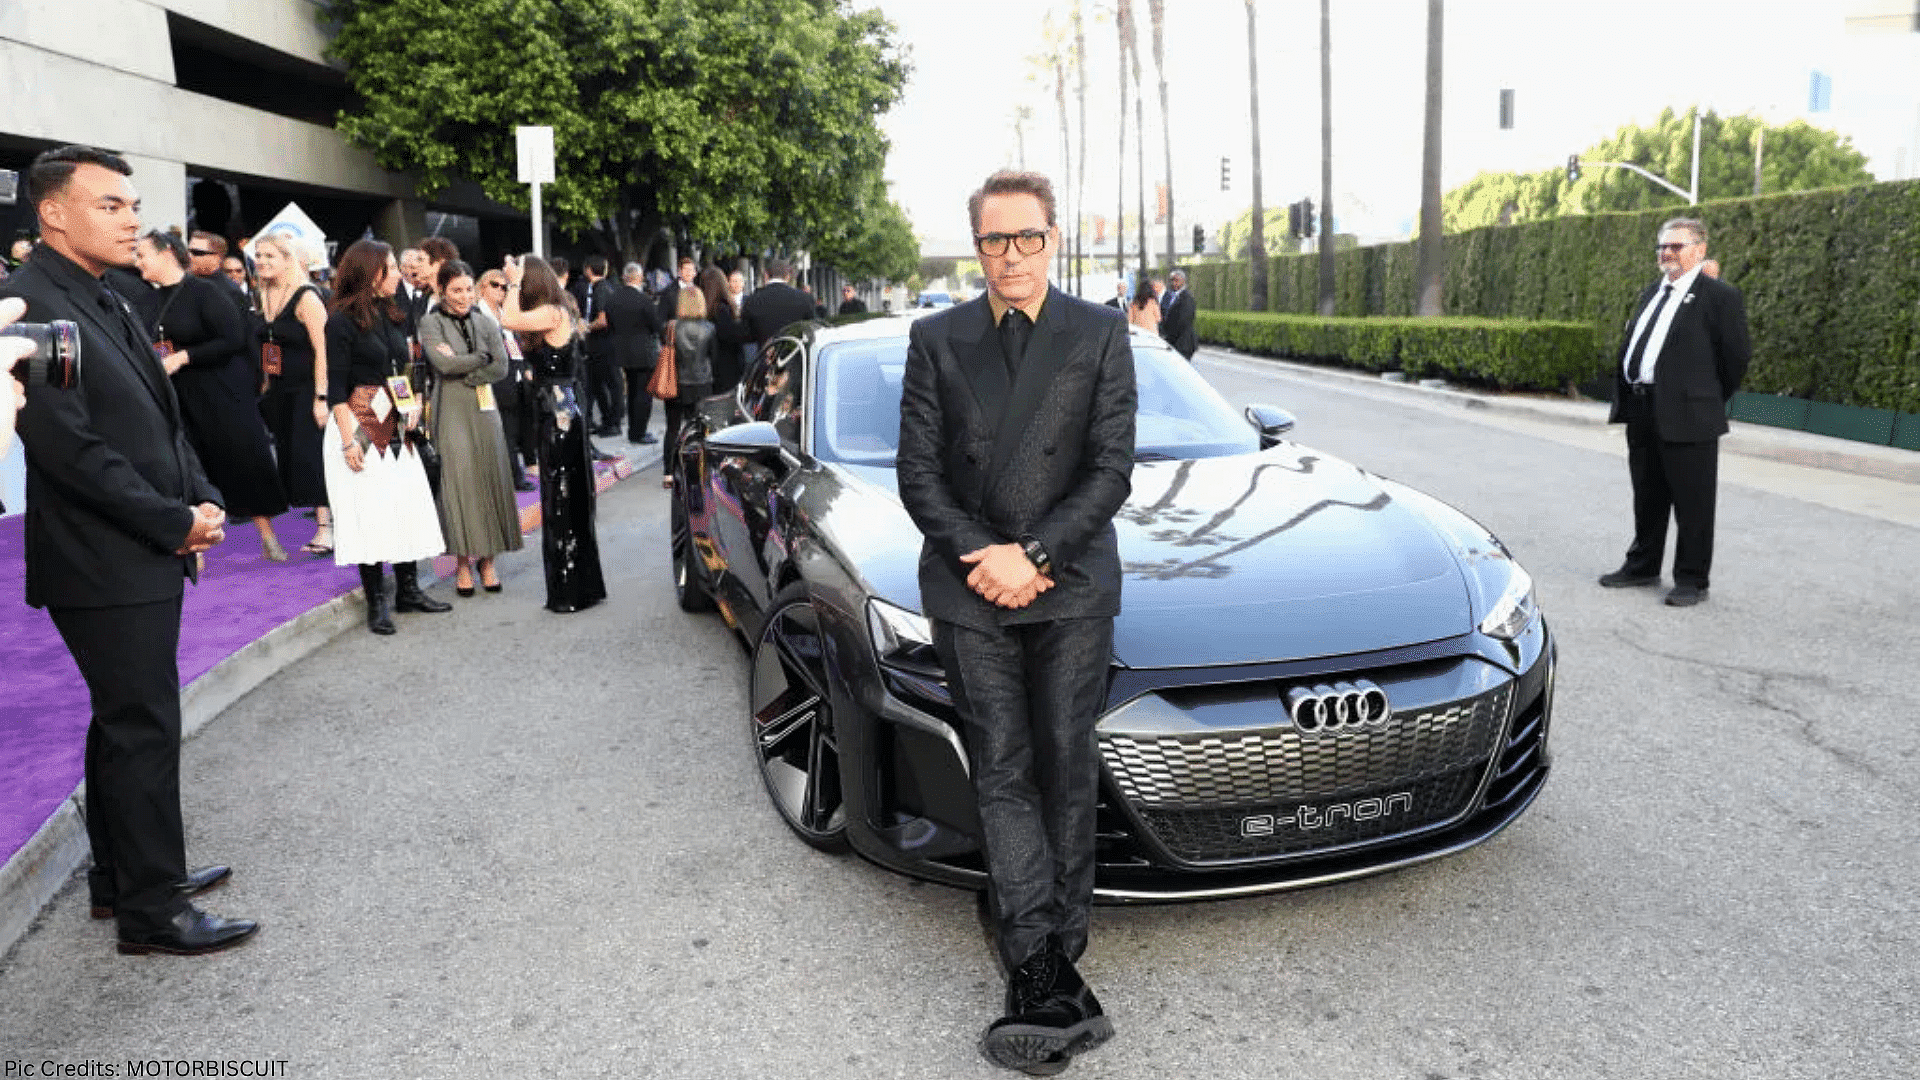 Robert Downey Jr.’s Audi e-tron GT concept